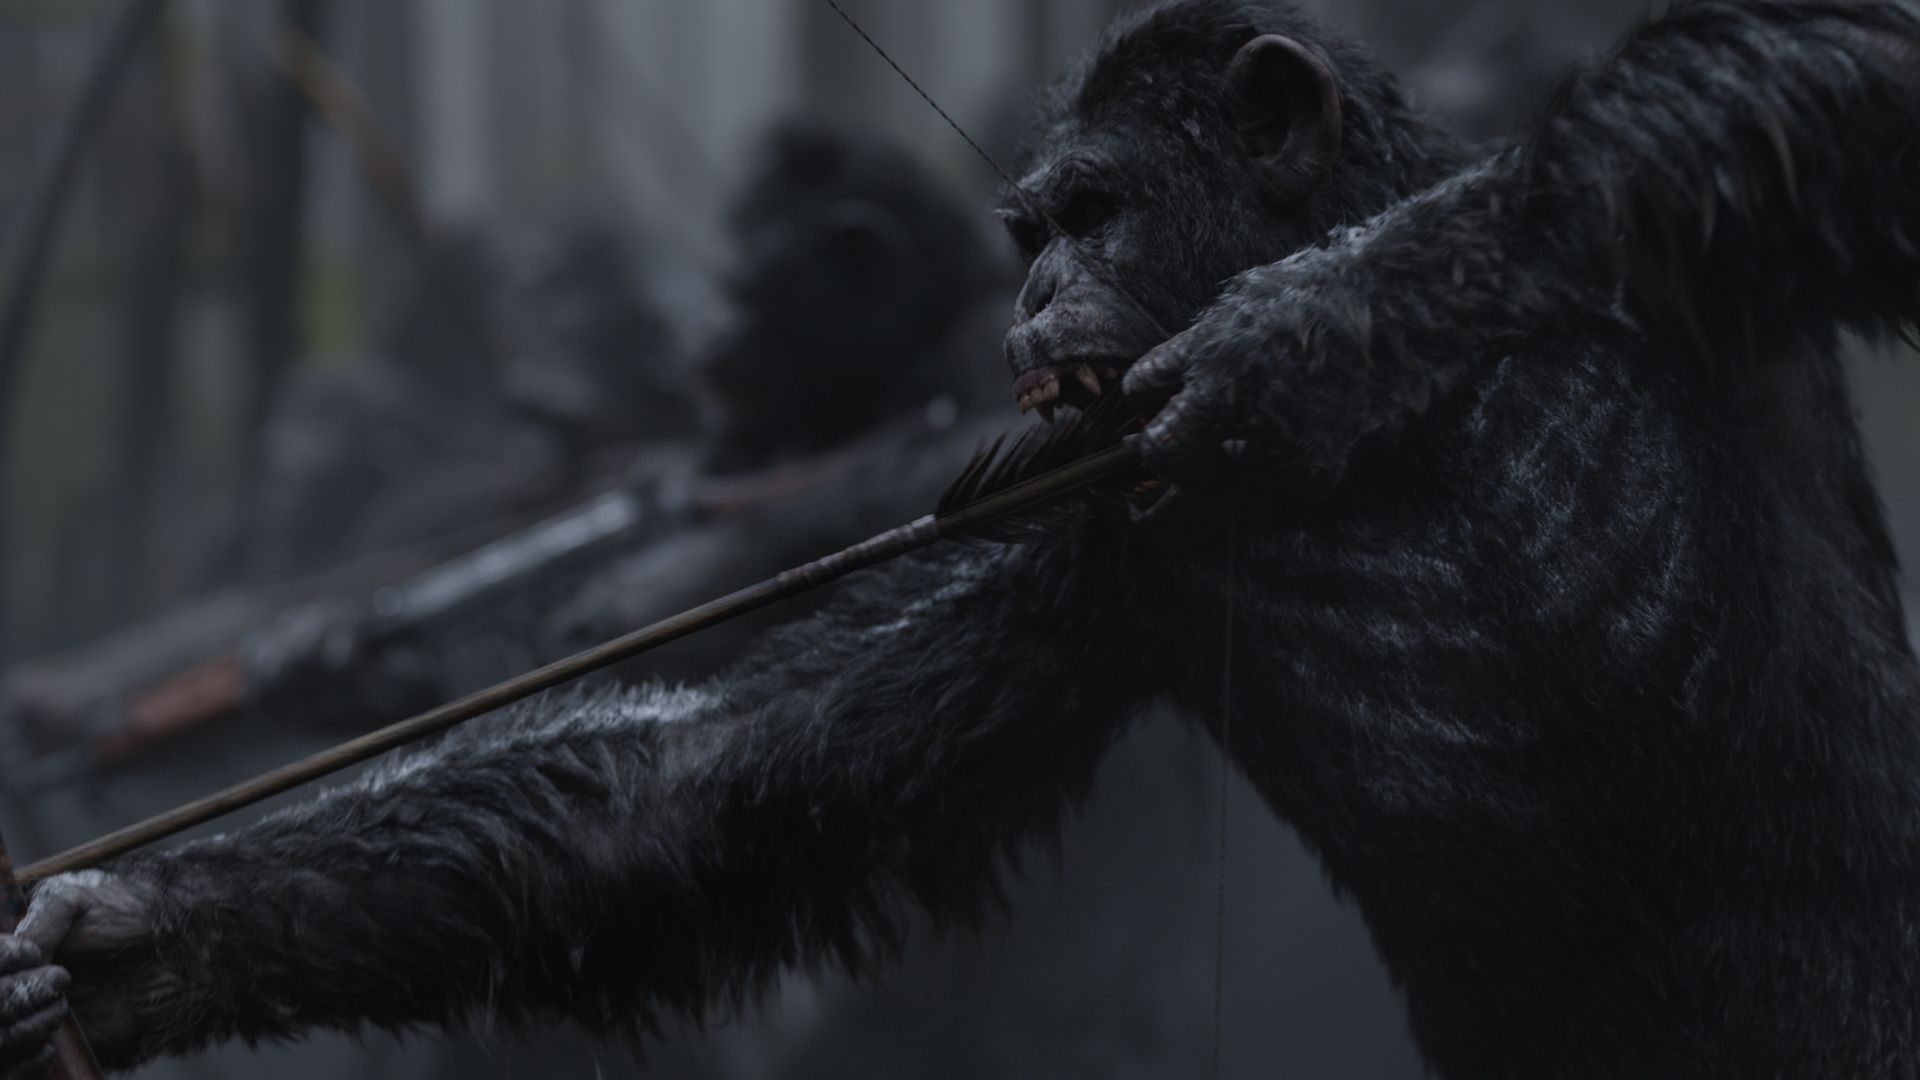 Война планеты обезьян, обезьяна, лучшие фильмы, War for the Planet of the Apes, ape, 4k (horizontal)